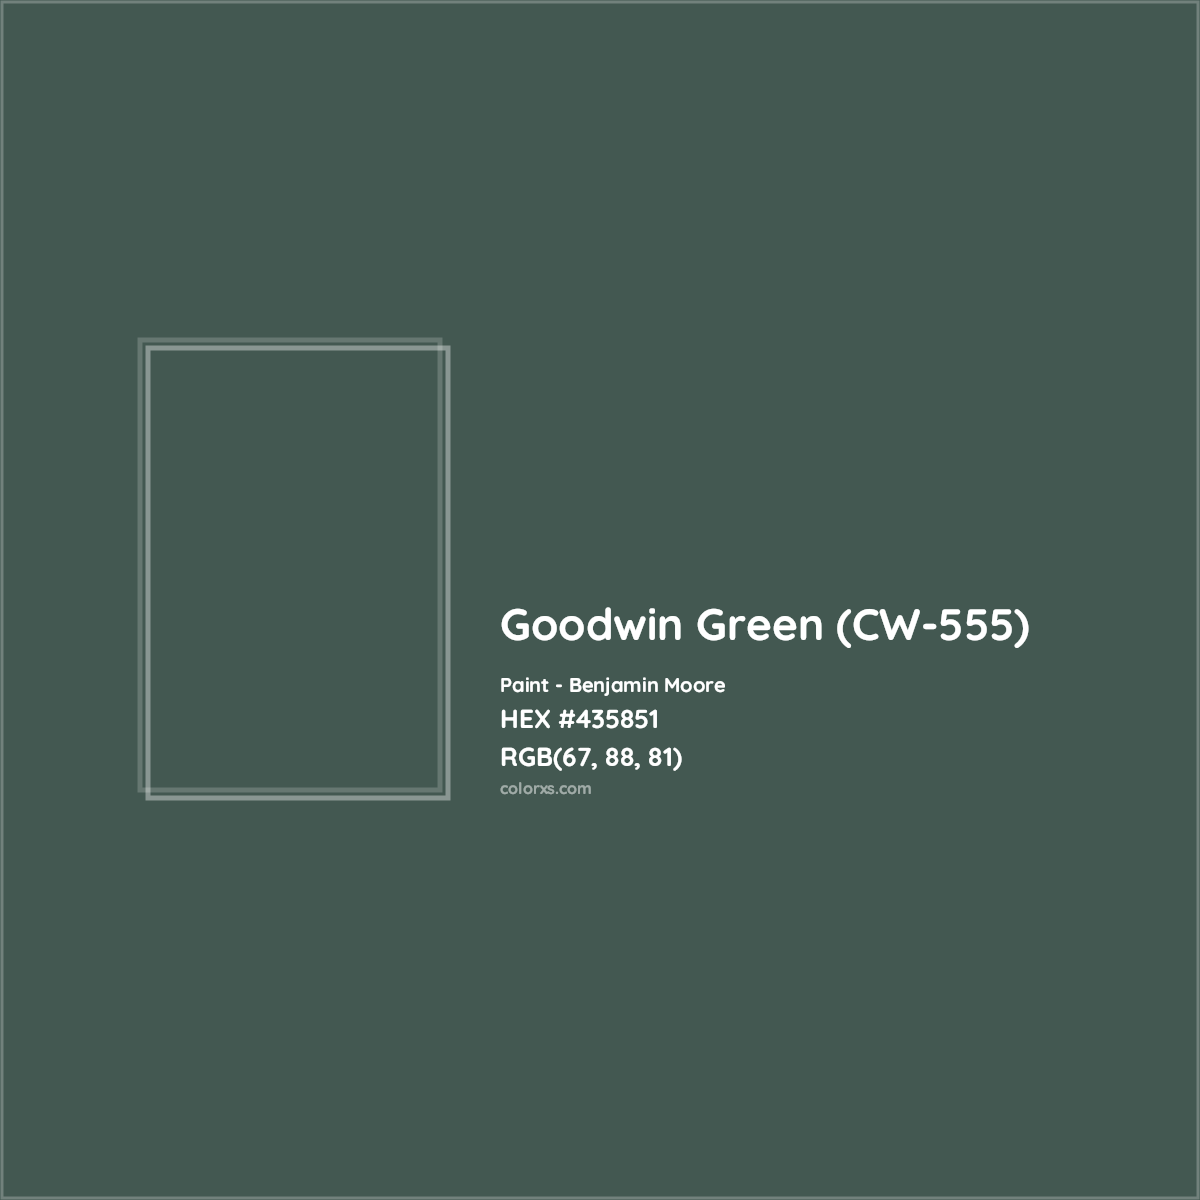 HEX #435851 Goodwin Green (CW-555) Paint Benjamin Moore - Color Code